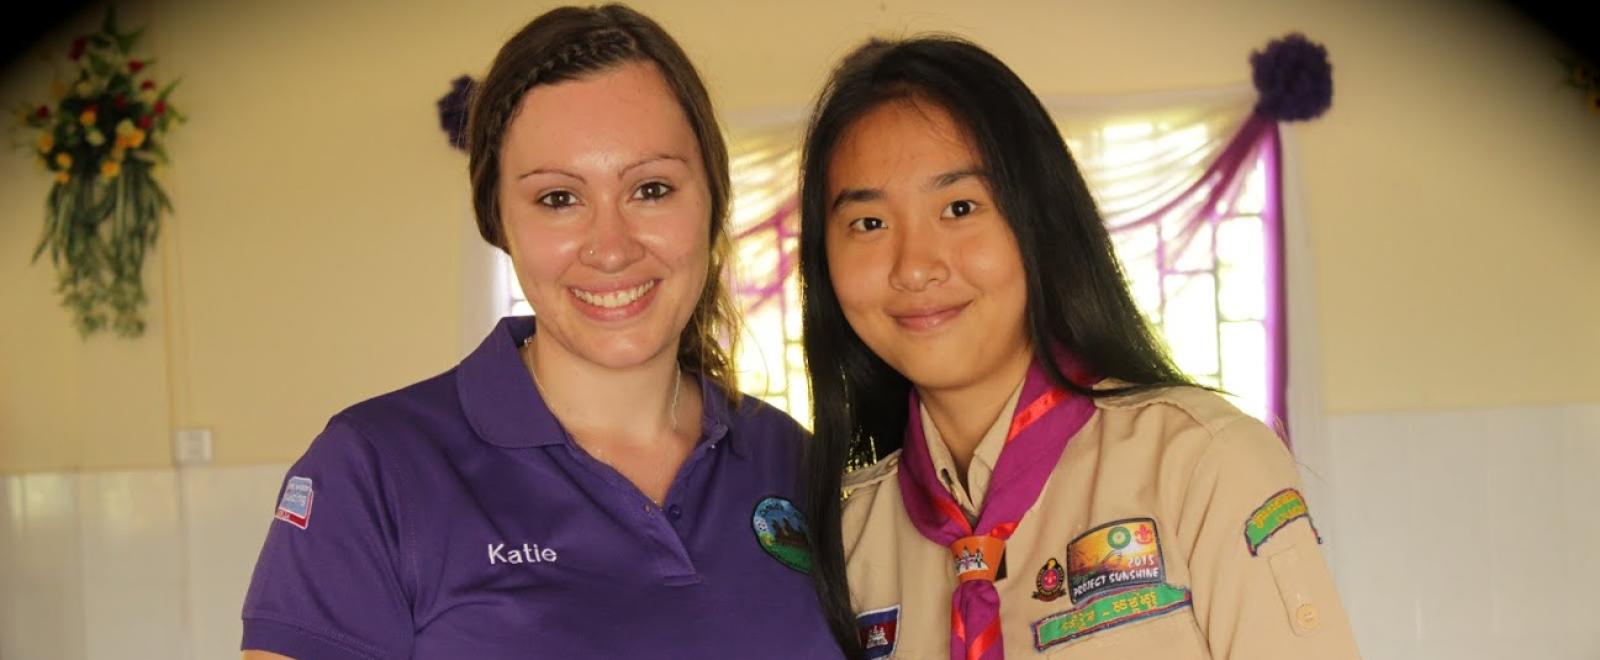 Anglia girl guides in Cambodia